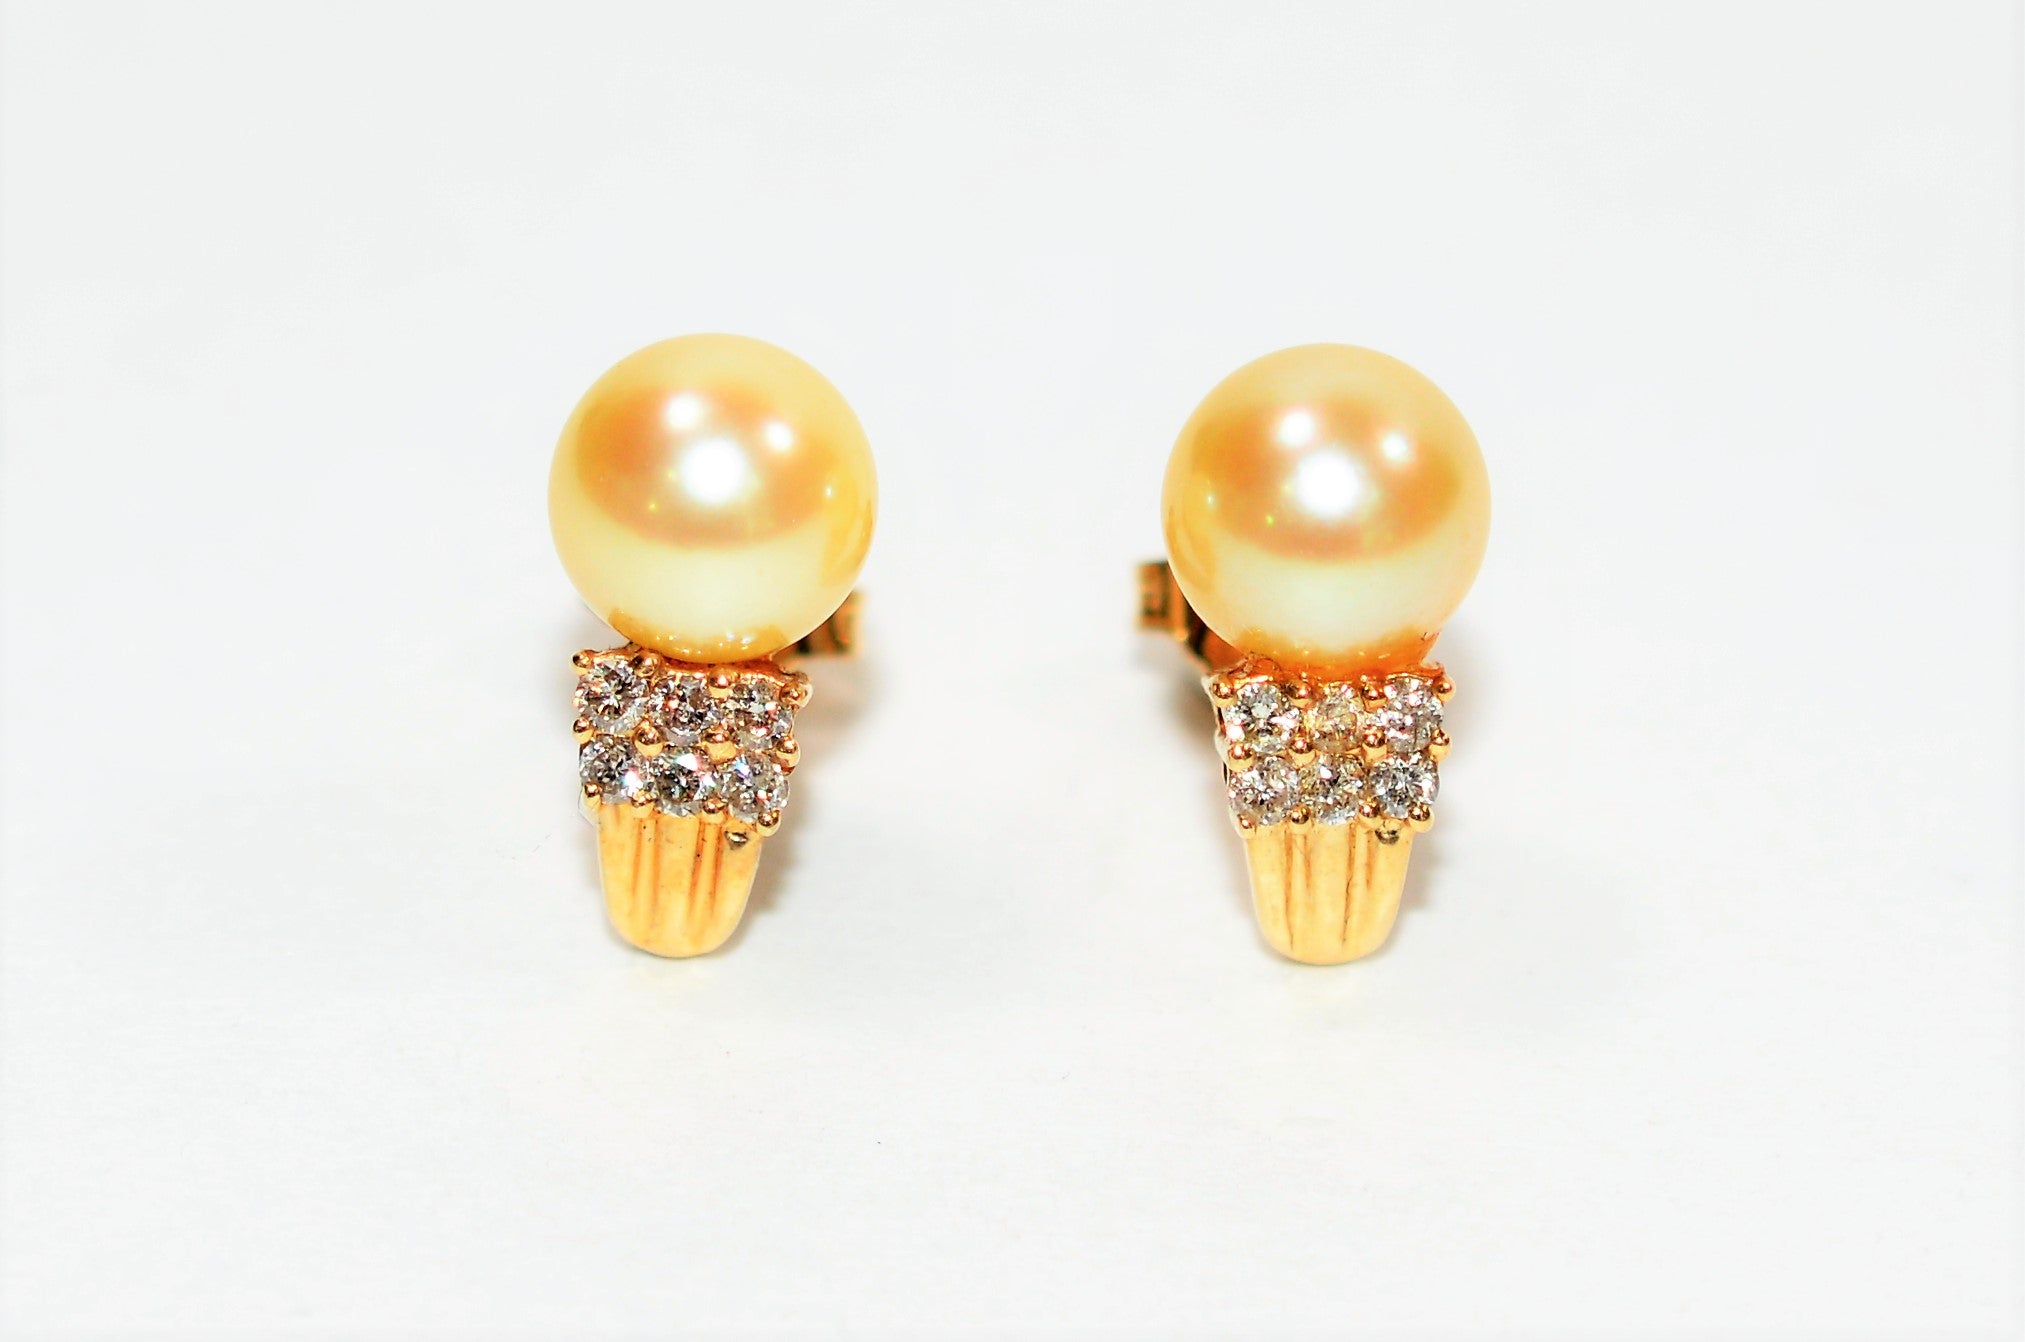 Natural South Sea Pearl & Diamond Earrings 14K Solid Gold .18tcw Cluster Earrings Stud Earrings Pearl Earrings Statement Women's Earrings